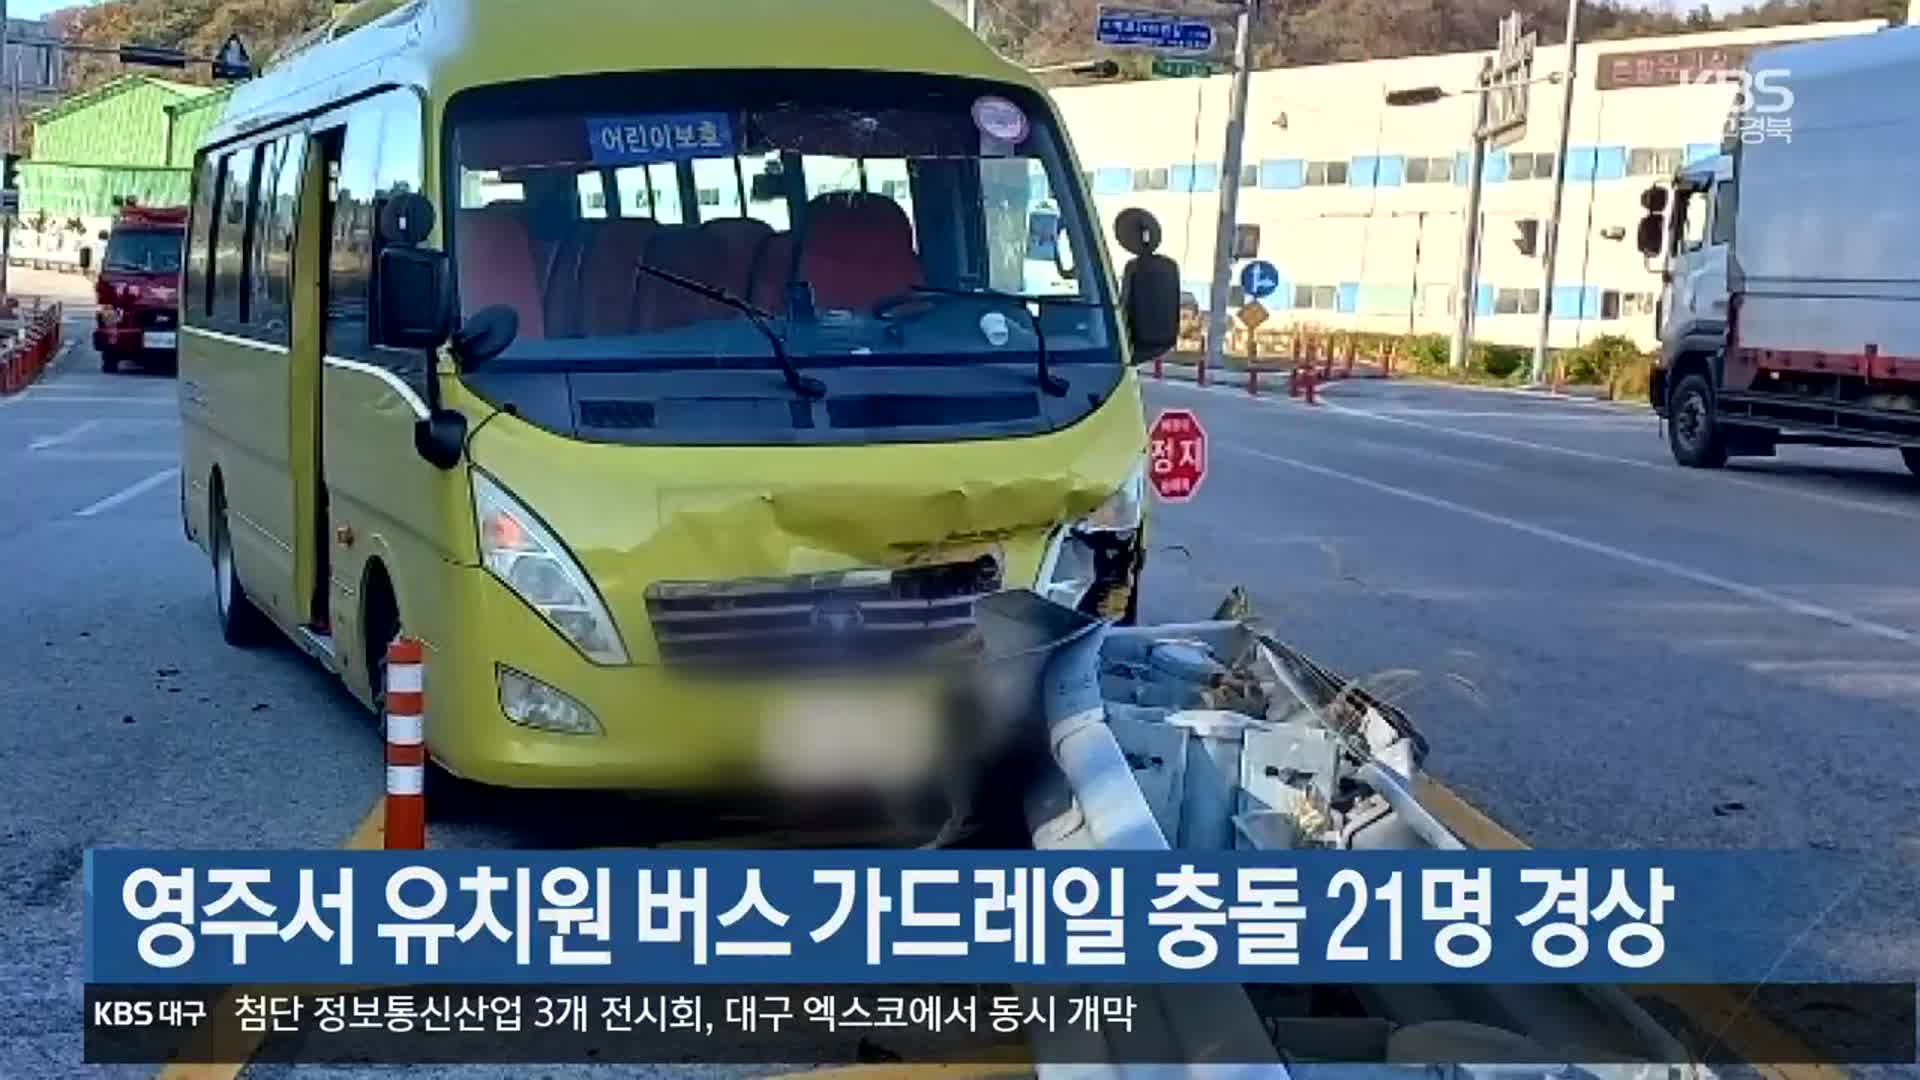 영주서 유치원 버스 가드레일 충돌 21명 경상